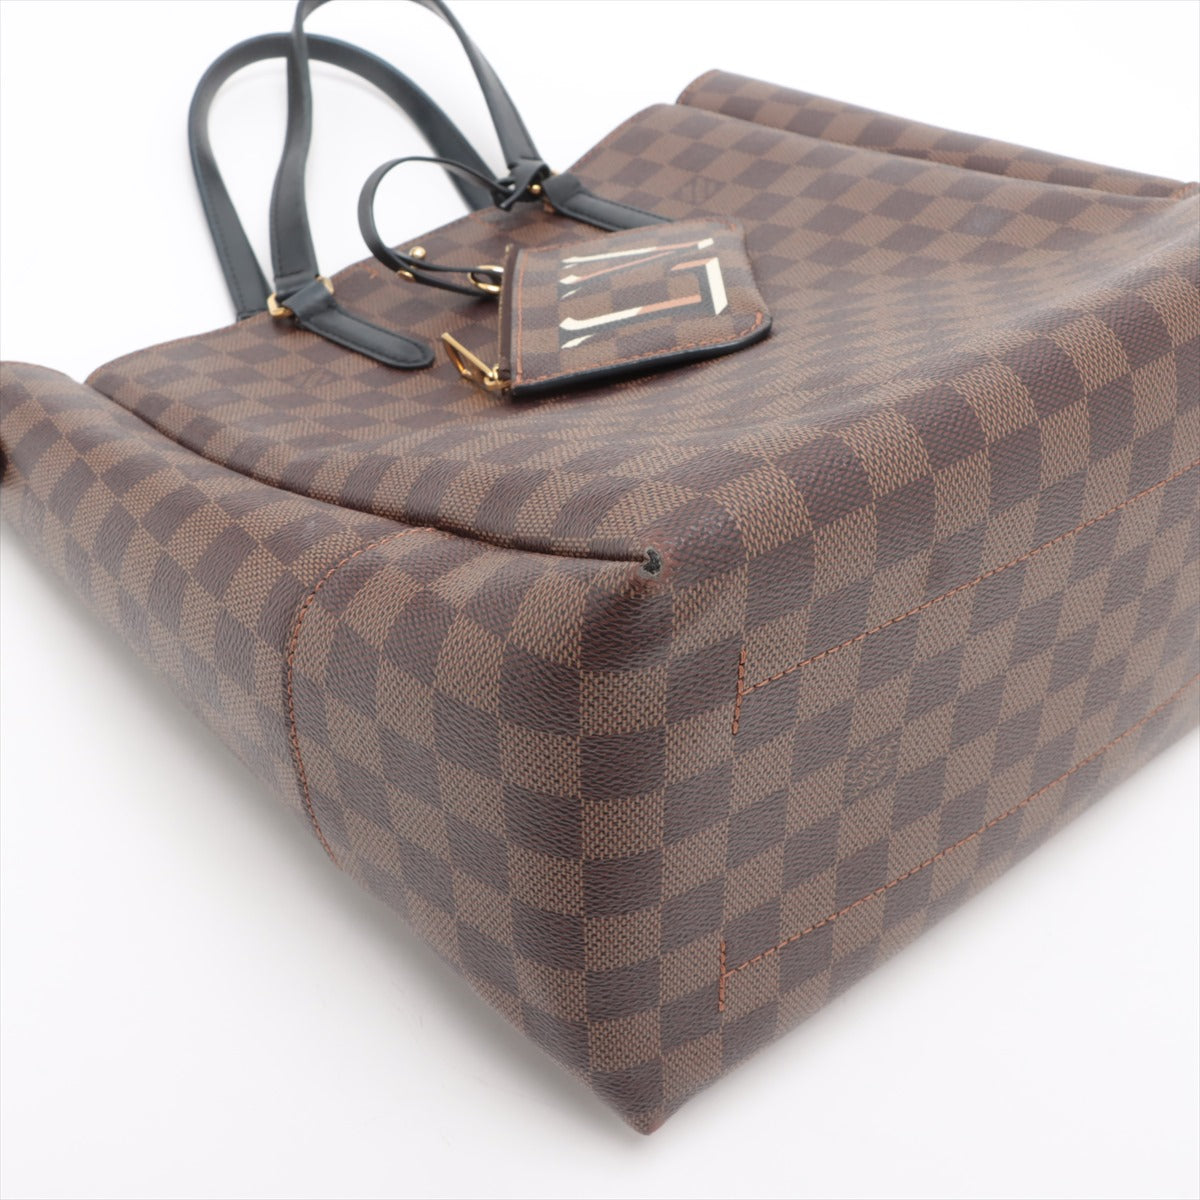 Louis Vuitton Belmont Damier Ebene Shoulder Bag